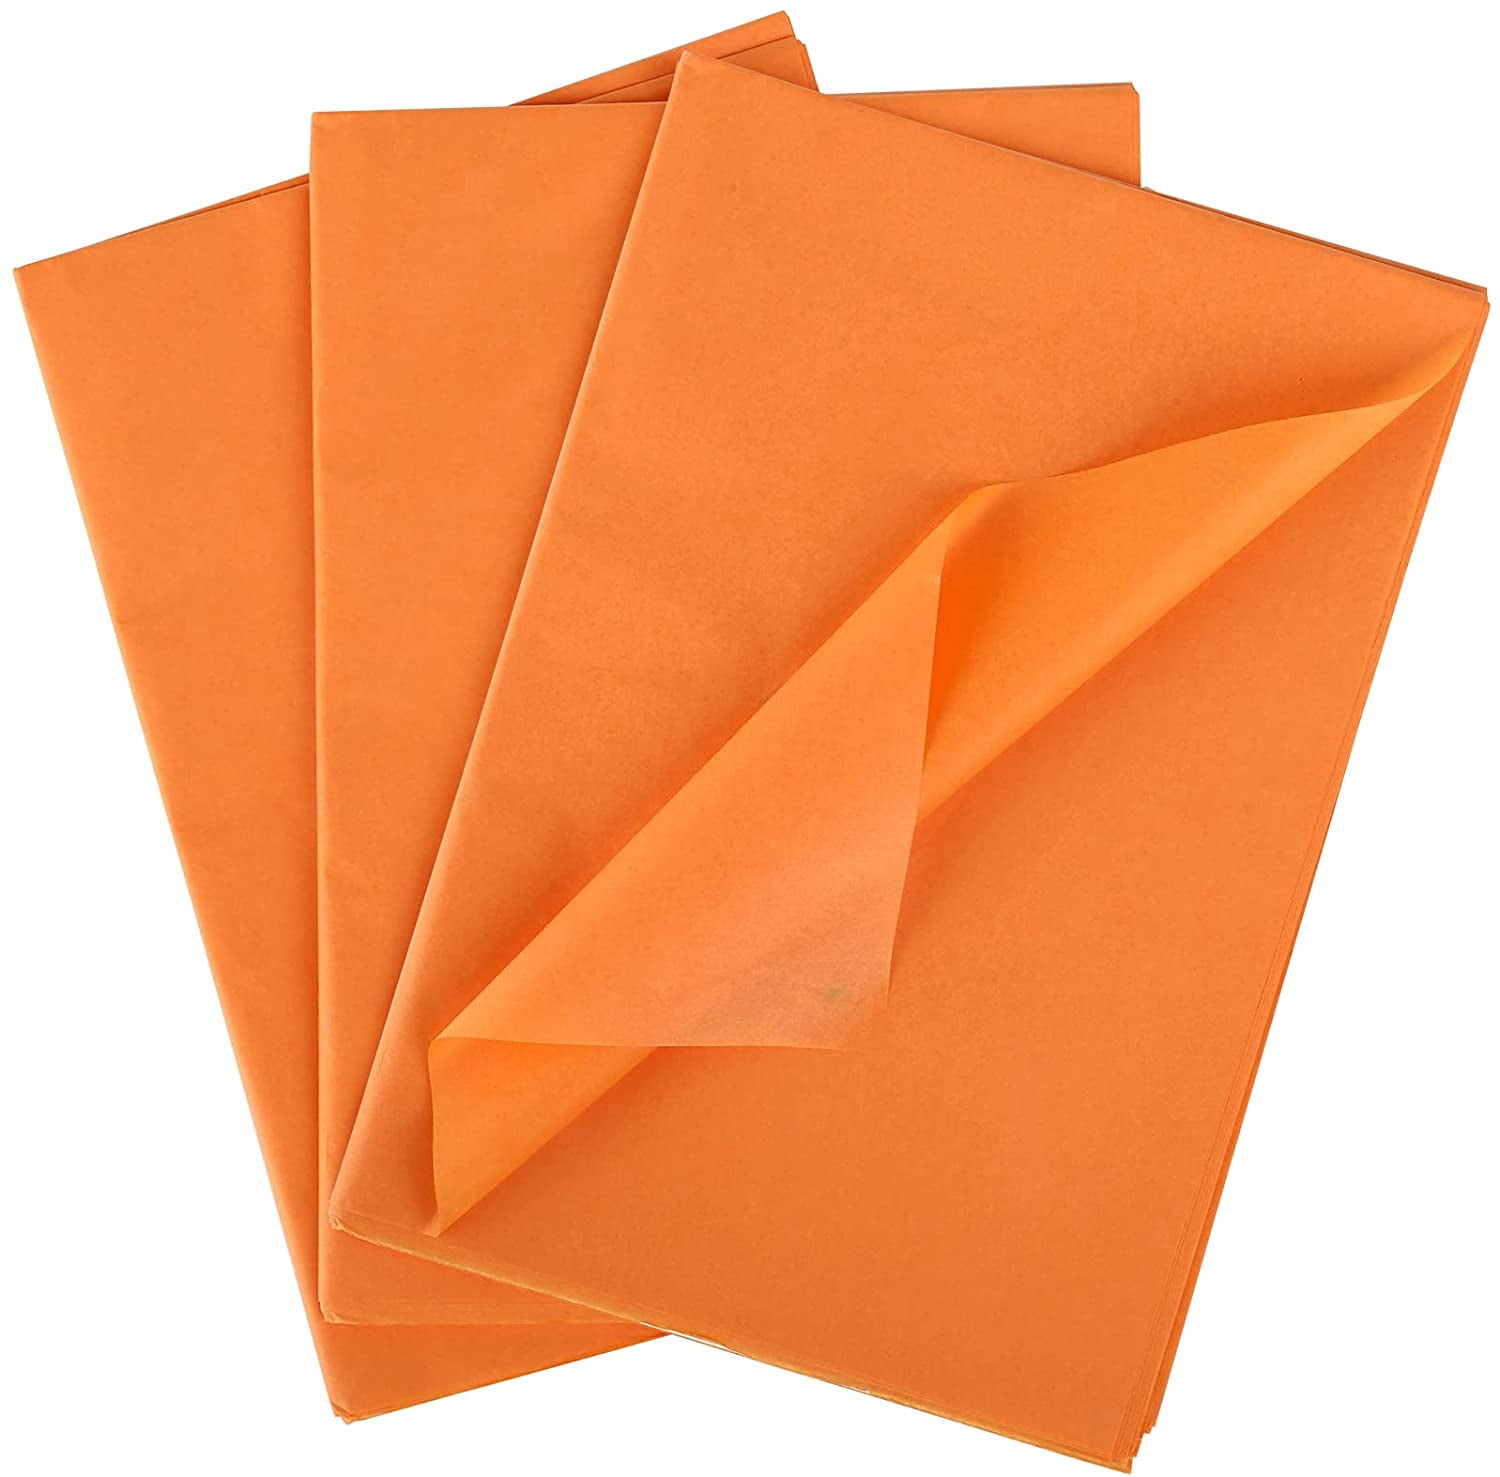 Easy DIY: Tissue Paper Oranges